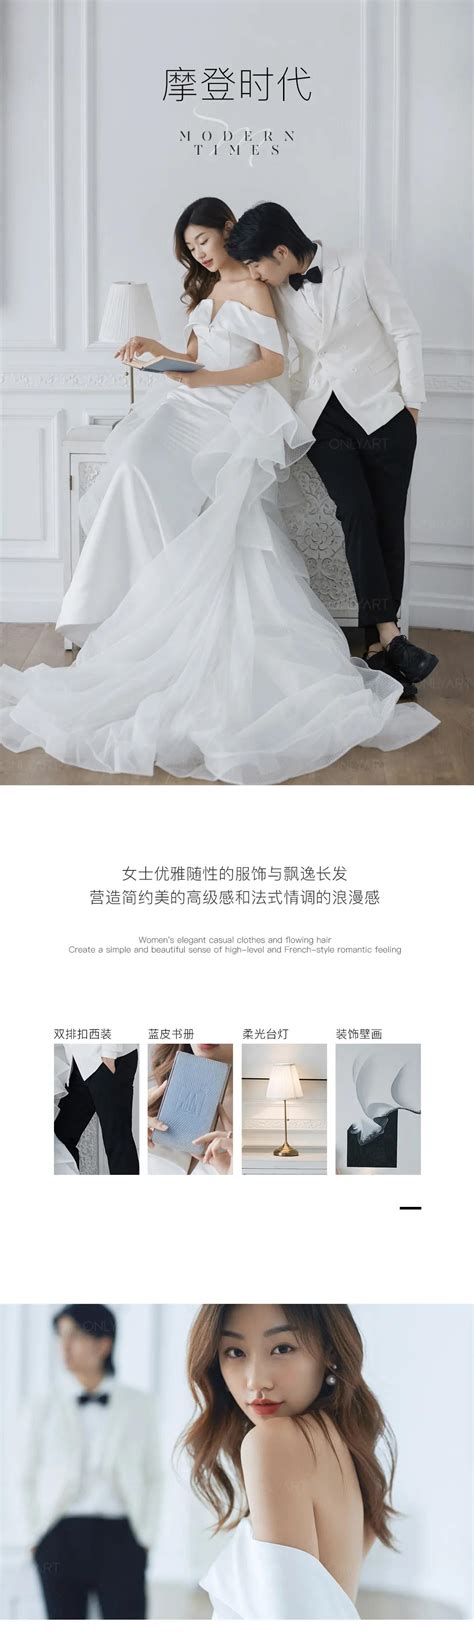 买一套婚纱价格是多少 如何选择合适的婚纱 - 中国婚博会官网